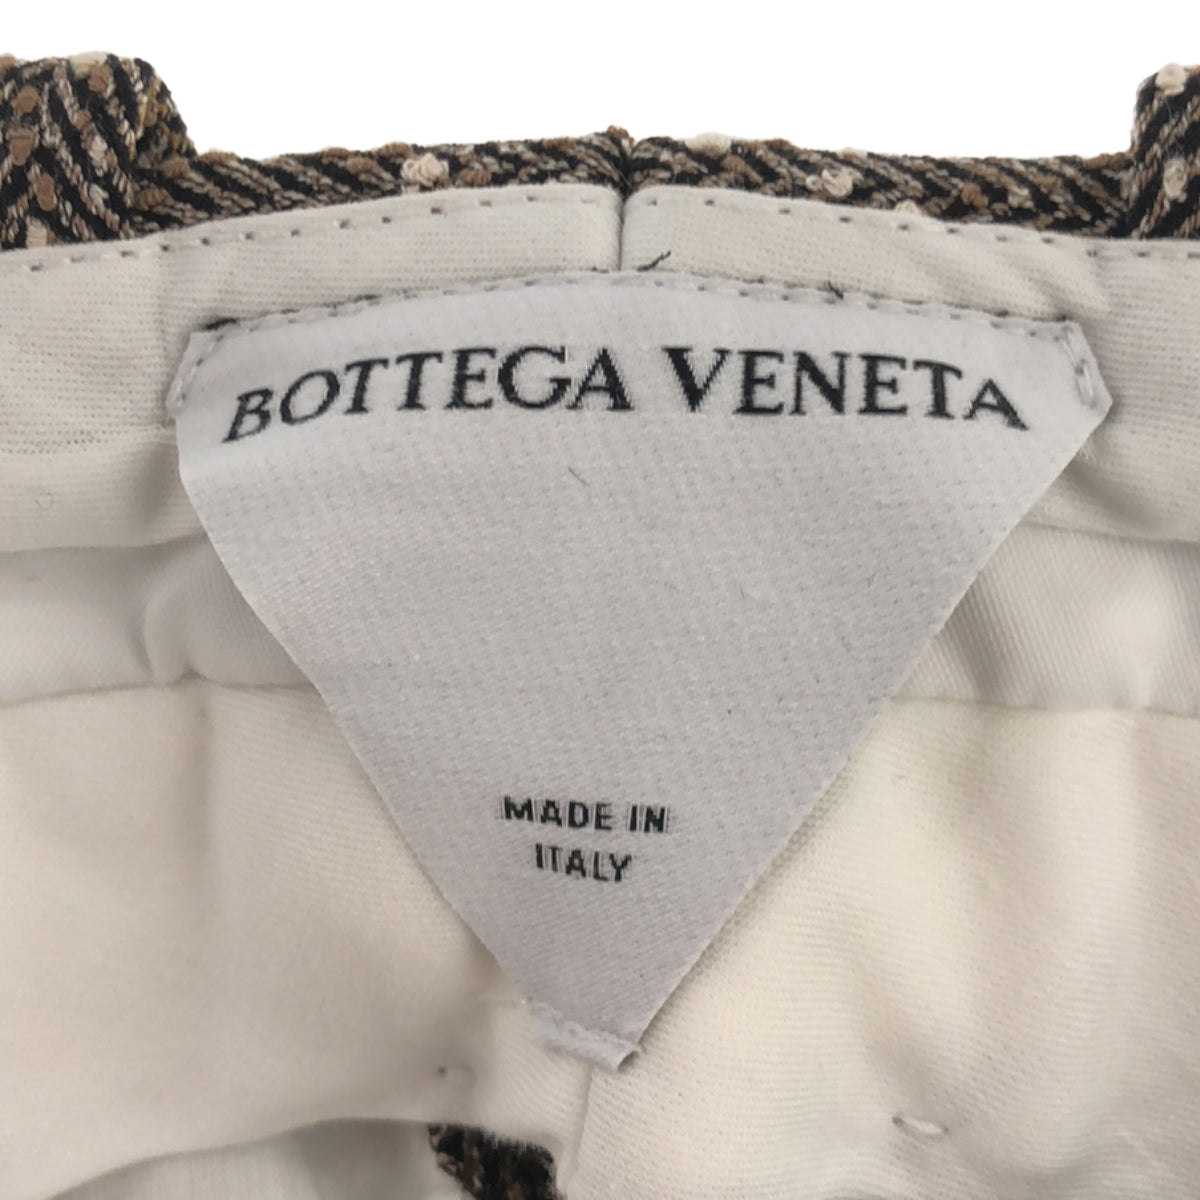 BOTTEGA VENETA / ボッテガヴェネタ | 2021AW | シルク混 ヘリンボーン スラックスパンツ | 36 | レディース